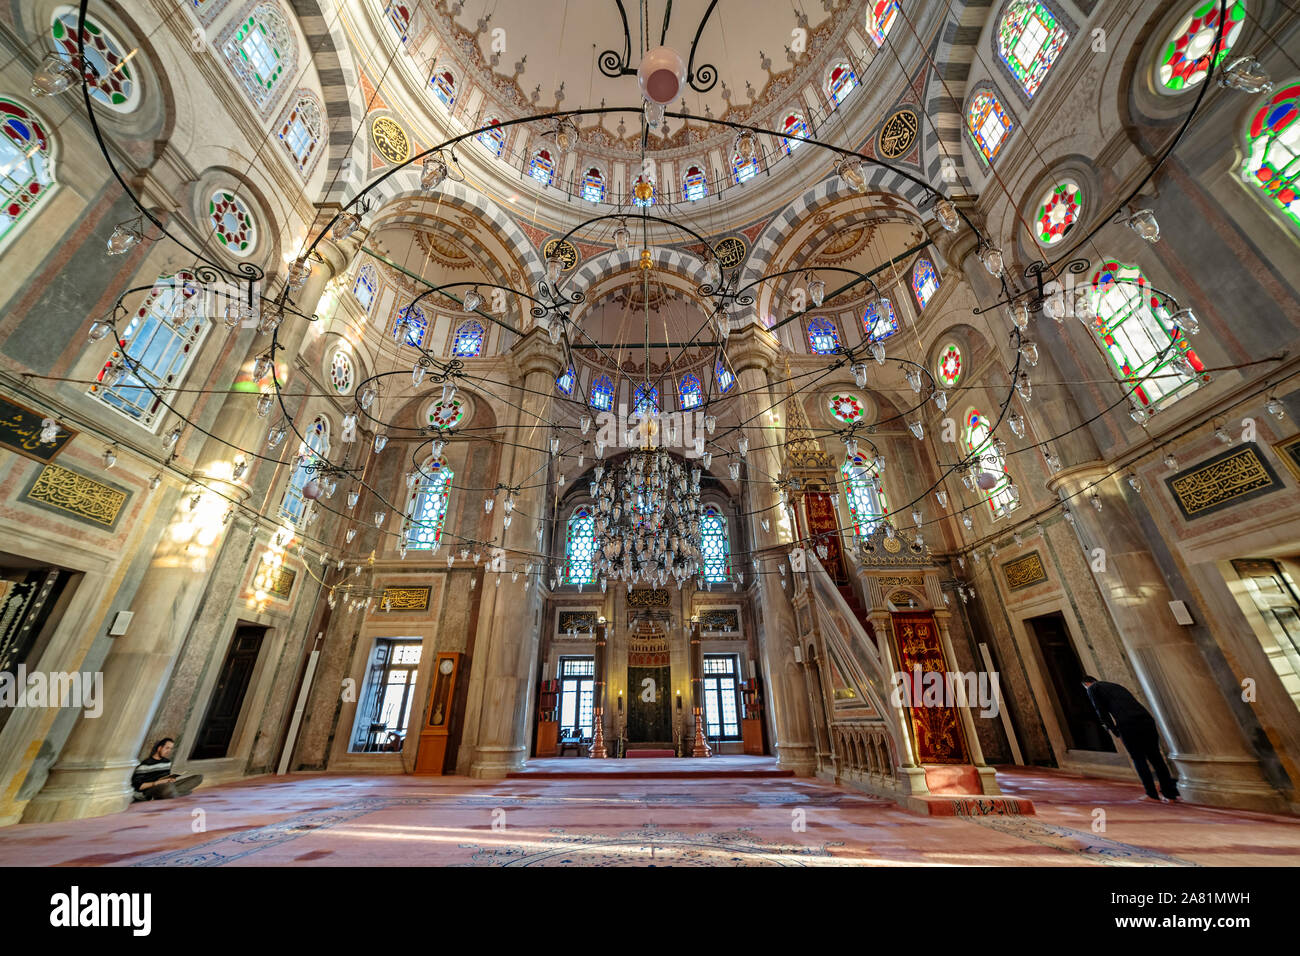 ISTANBUL, Turchia, 5 novembre 2019: interno dettagli dalla moschea Laleli, una settecentesca Ottoman Imperial moschea si trova in Laleli, Fatih, Istanbul. Foto Stock